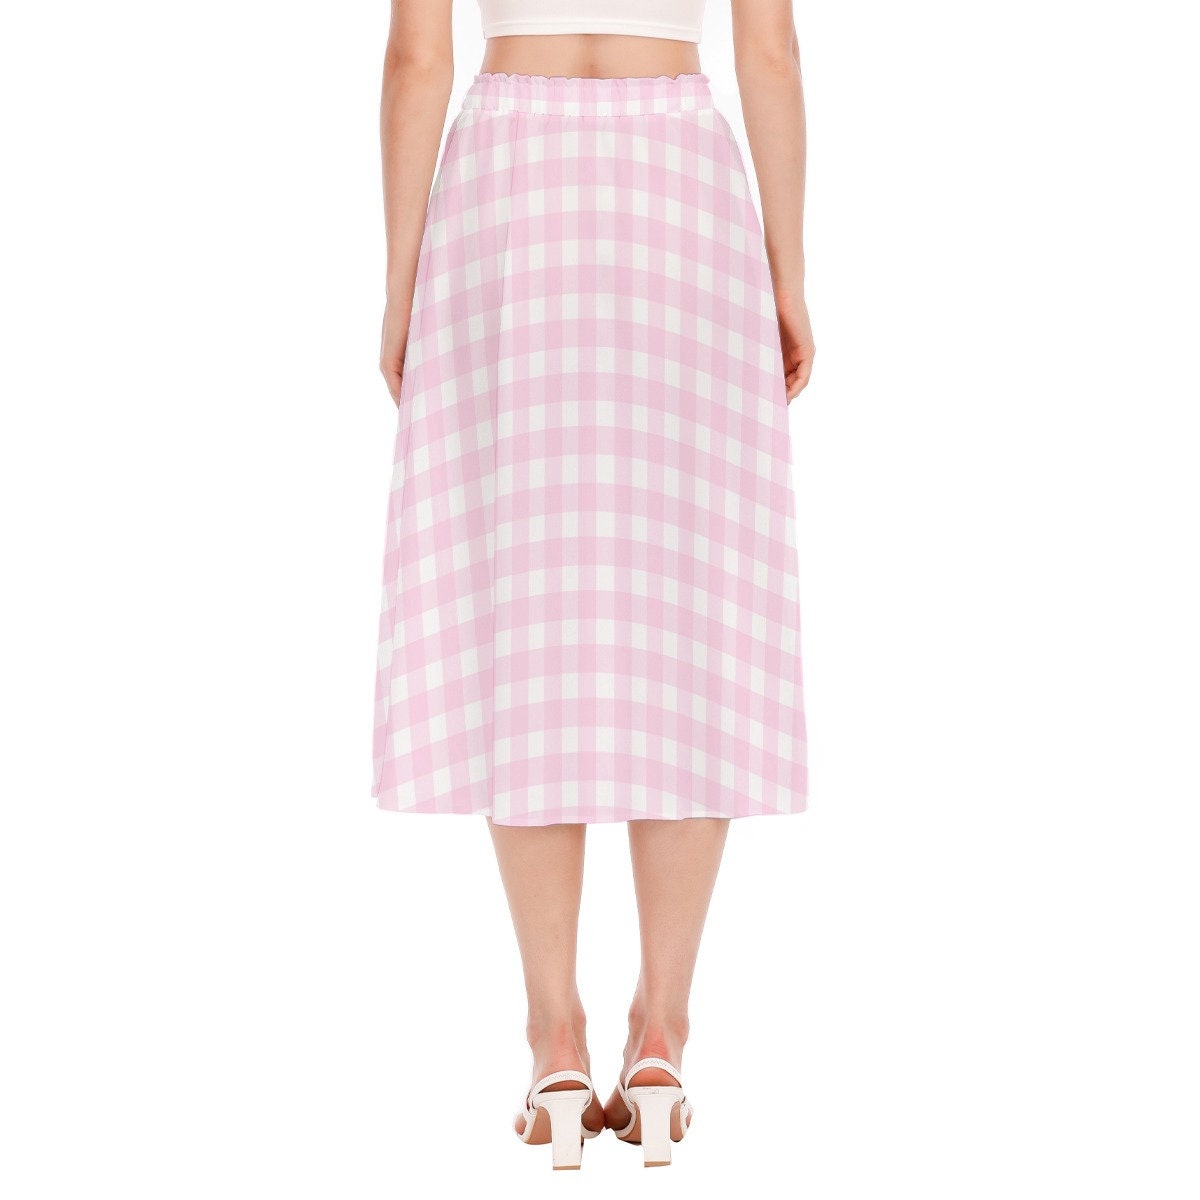 Pink Gingham Skirt, Pink Midi Skirt, Pink Skirt, Retro Skirt, 50s inspired skirt, Pink Aline skirt